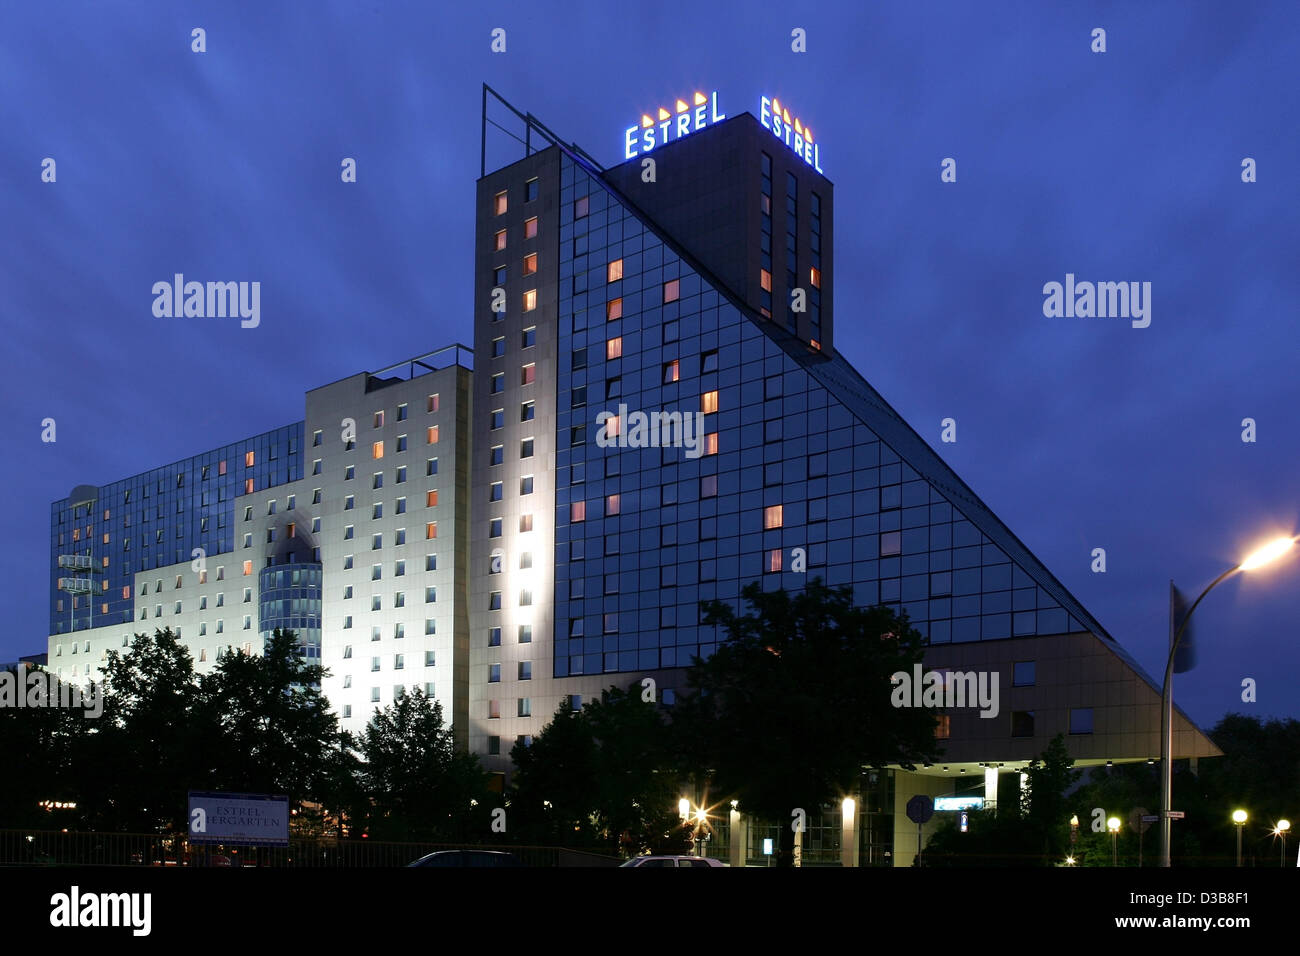 (Afp) - l'image montre l'Estrel Hotel Berlin, en Allemagne, le 19 juillet 2005. Les étapes de l'hôtel l'anniversaire de Joseph Jackson, père de l'icône pop Michael Jackson le 22 juillet 2005. Banque D'Images